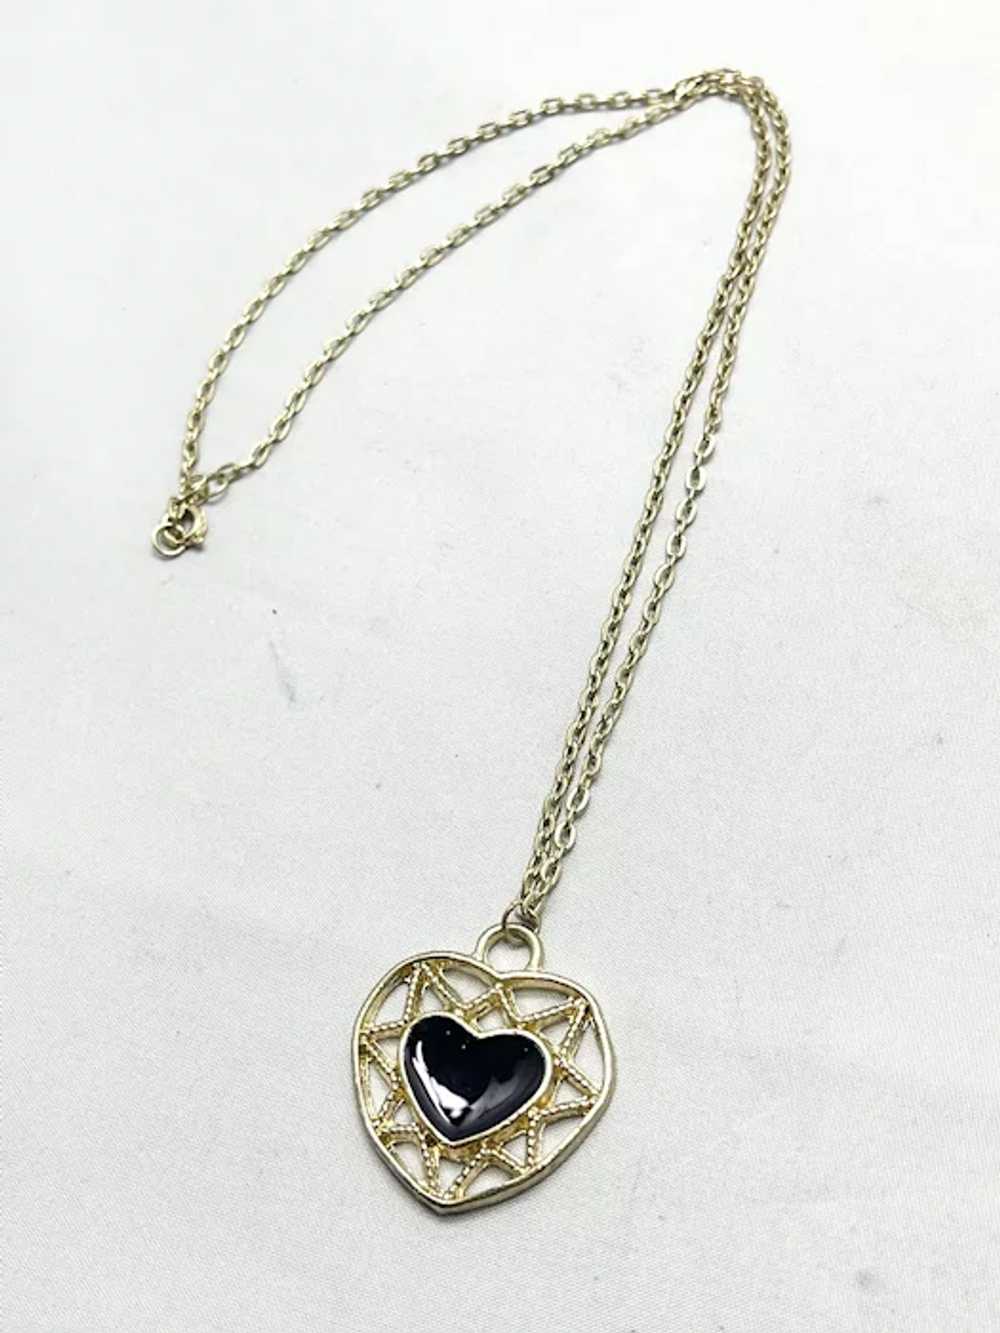 Vintage Black Enamel Heart Necklace - image 2